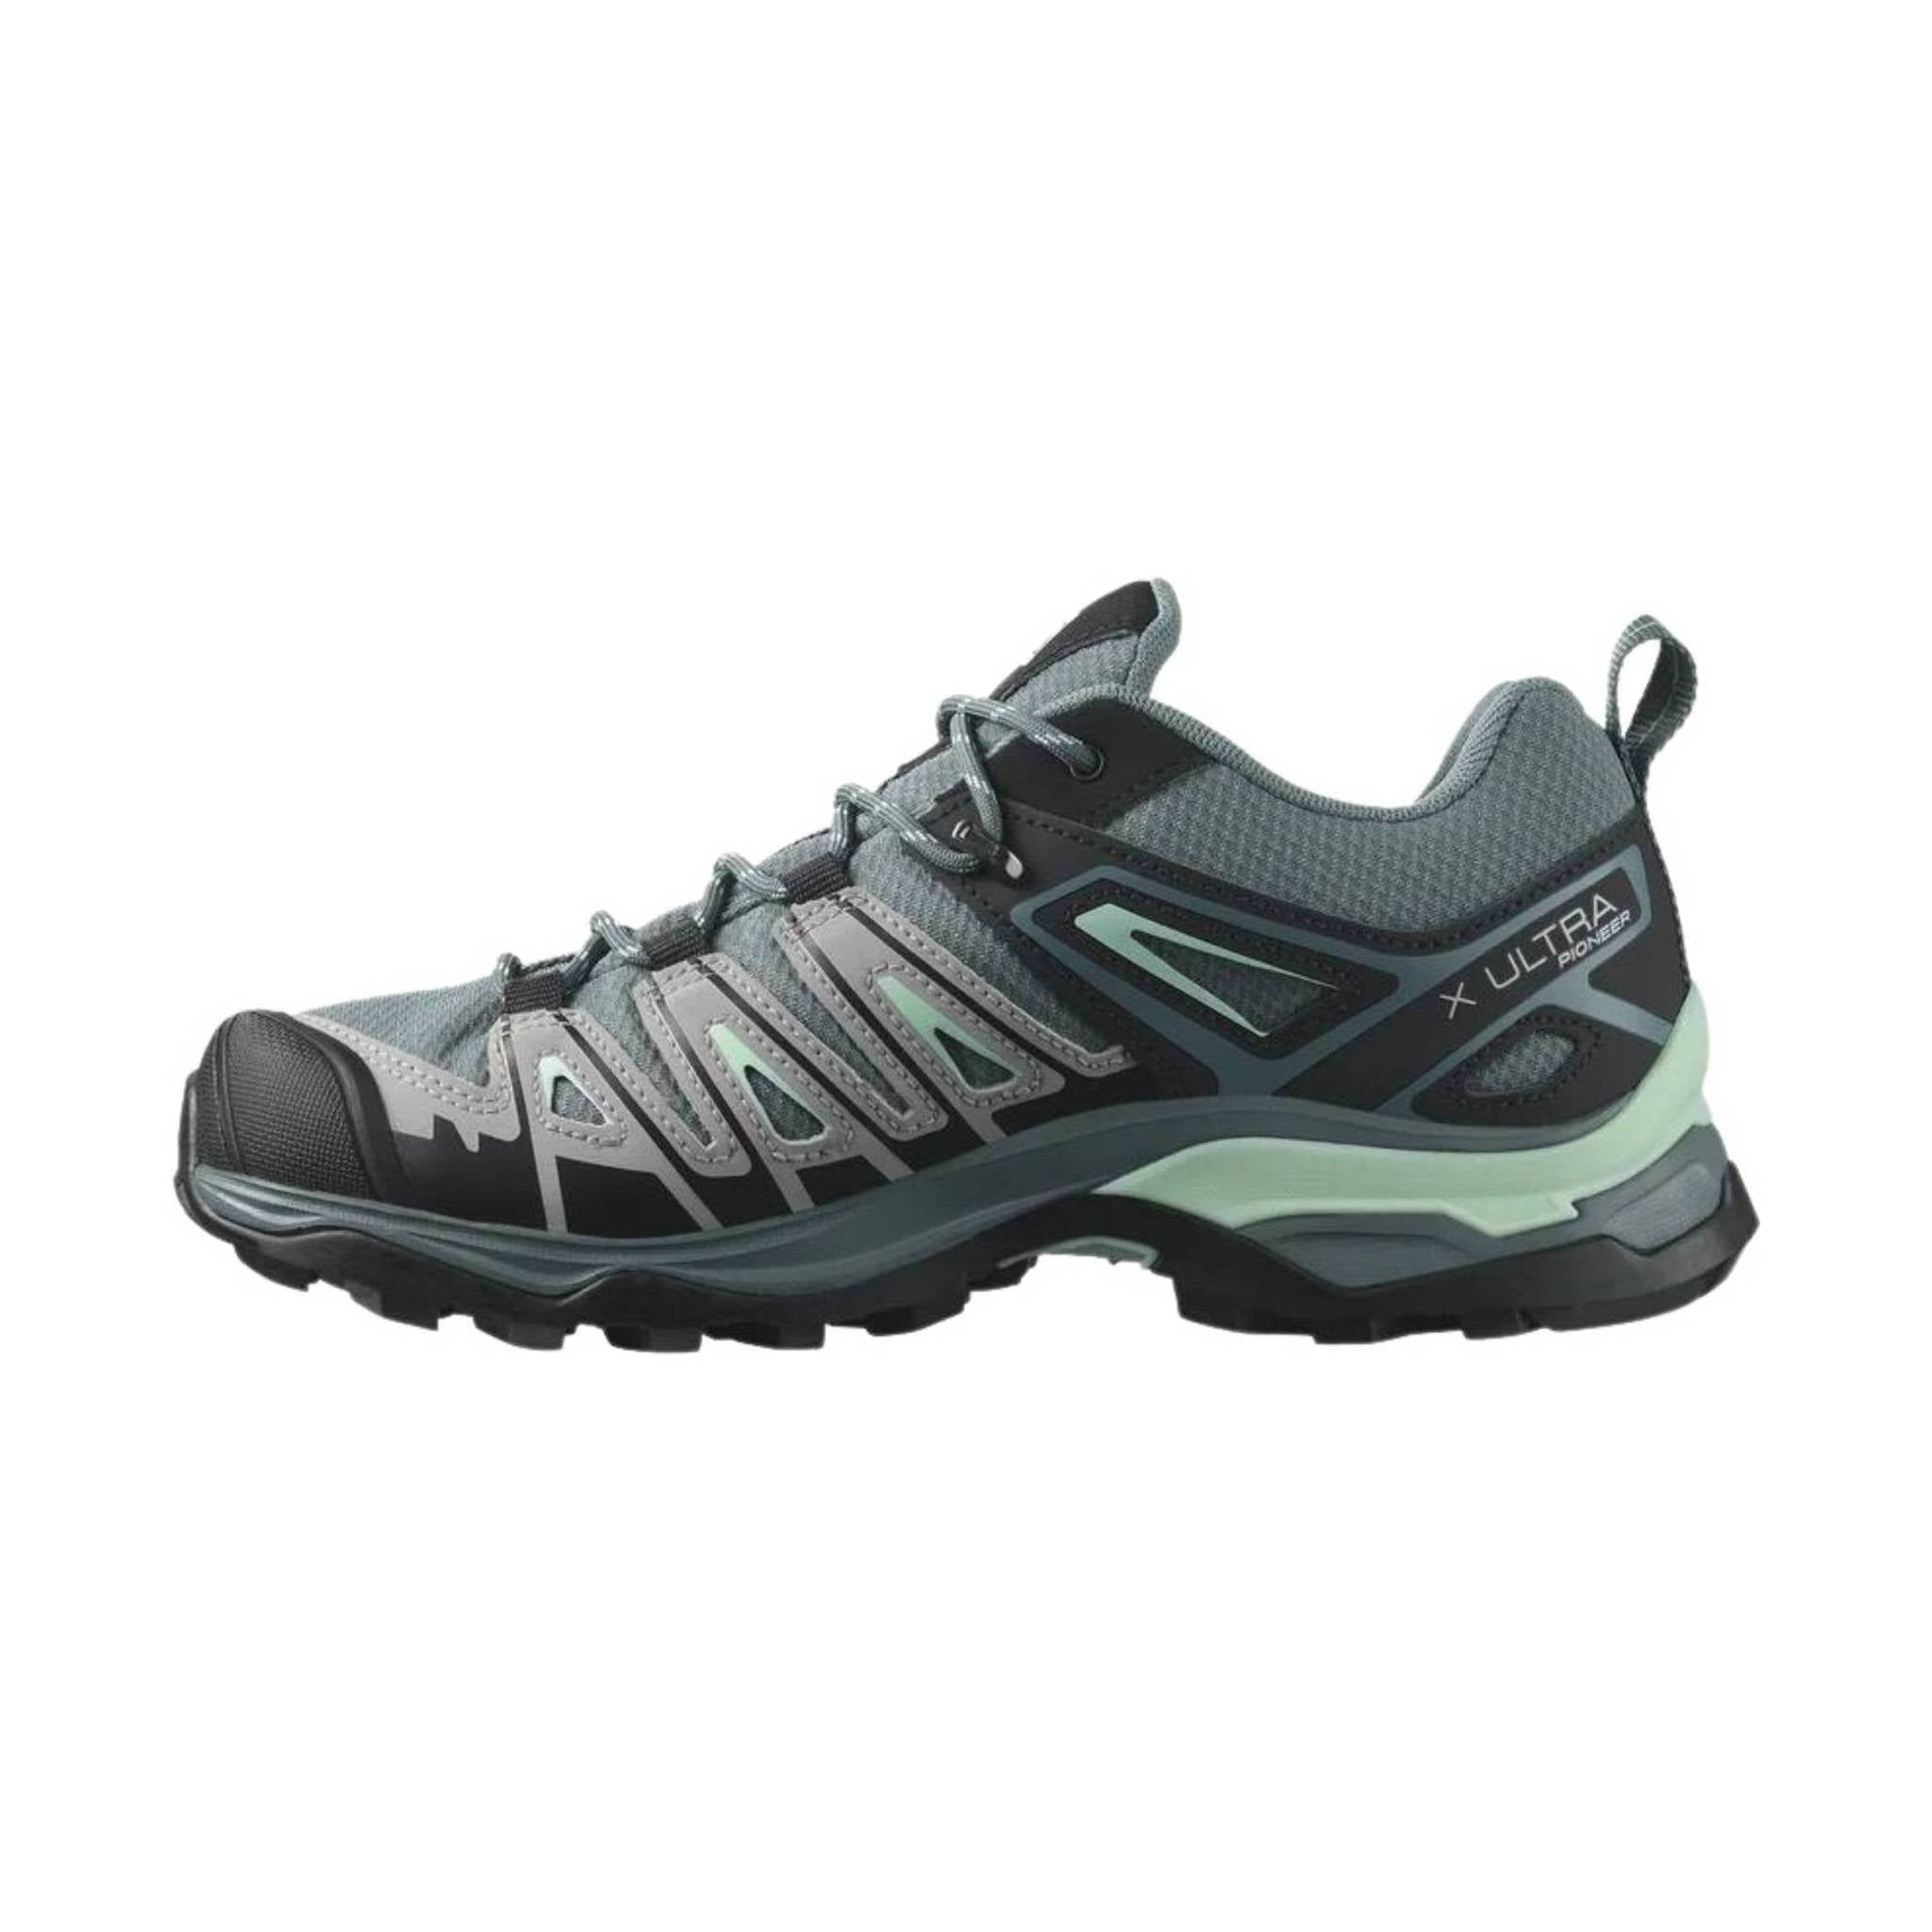 Salomon Women's X Ultra Waterproof Hiking Shoes - Stormy Weath – Lenny's & Apparel